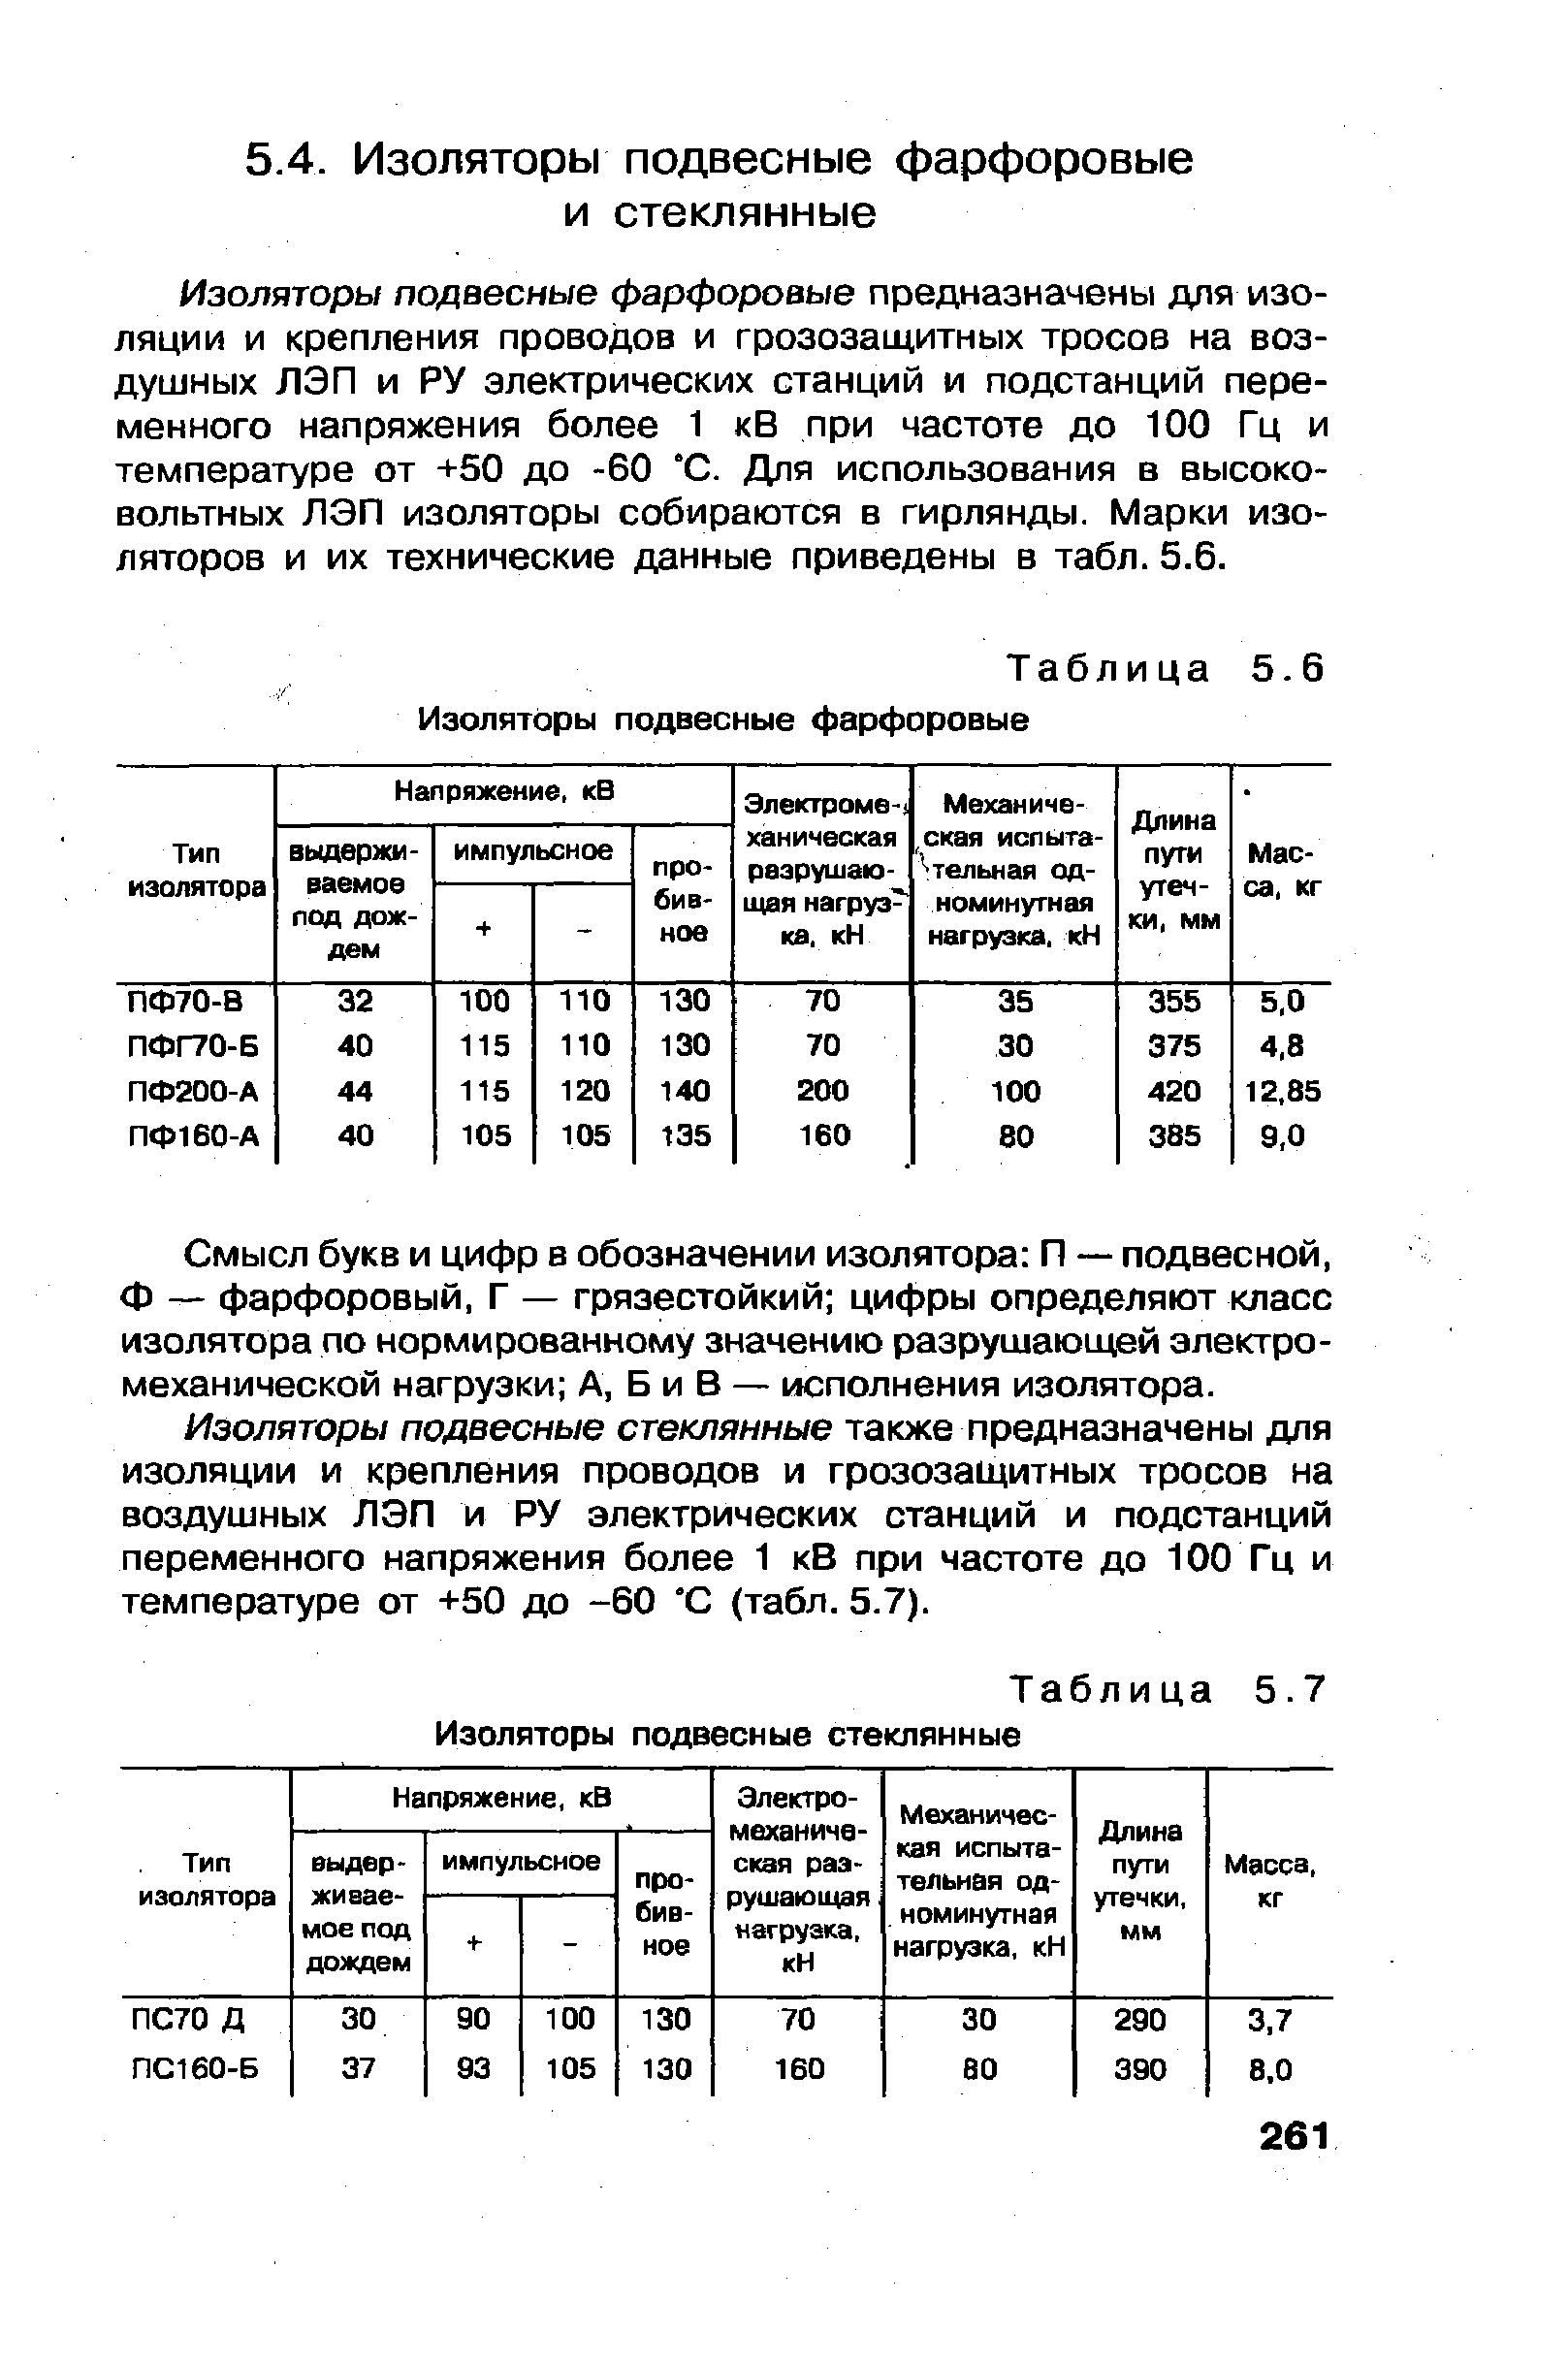 Таблица Изоляторы подвесные фарфоровые
